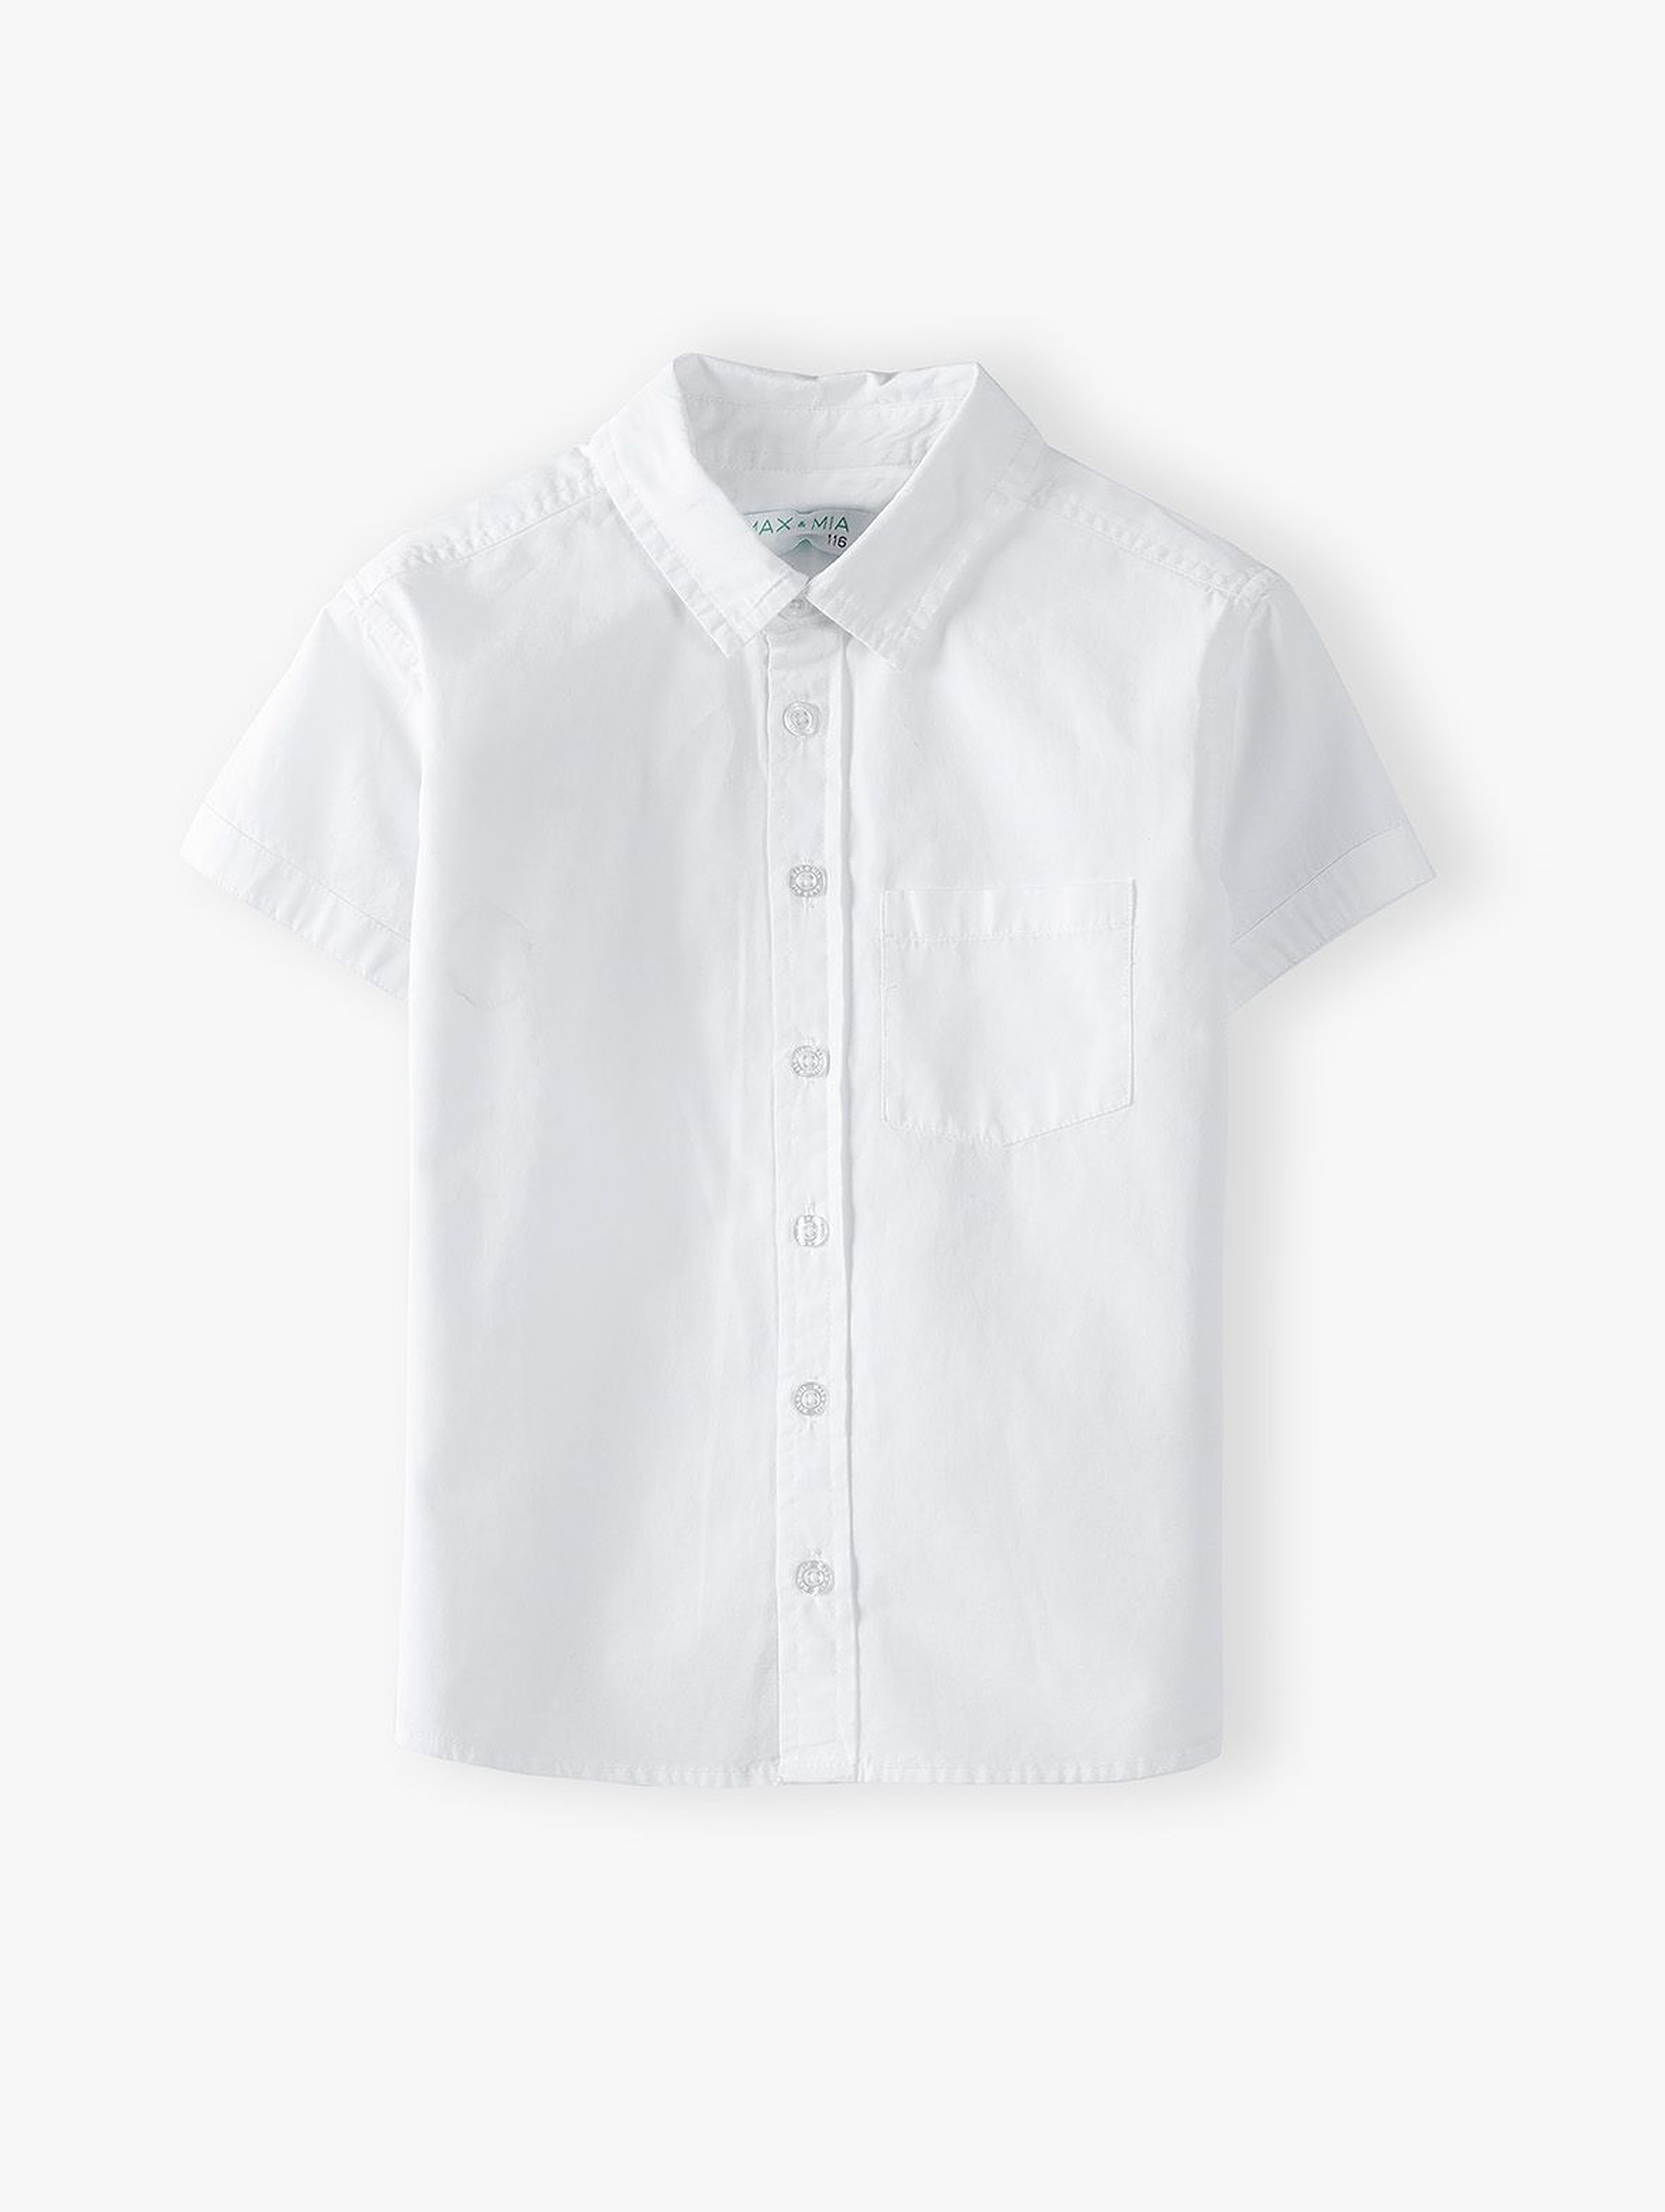 Koszula chłopięca biała z krótkim rękawem